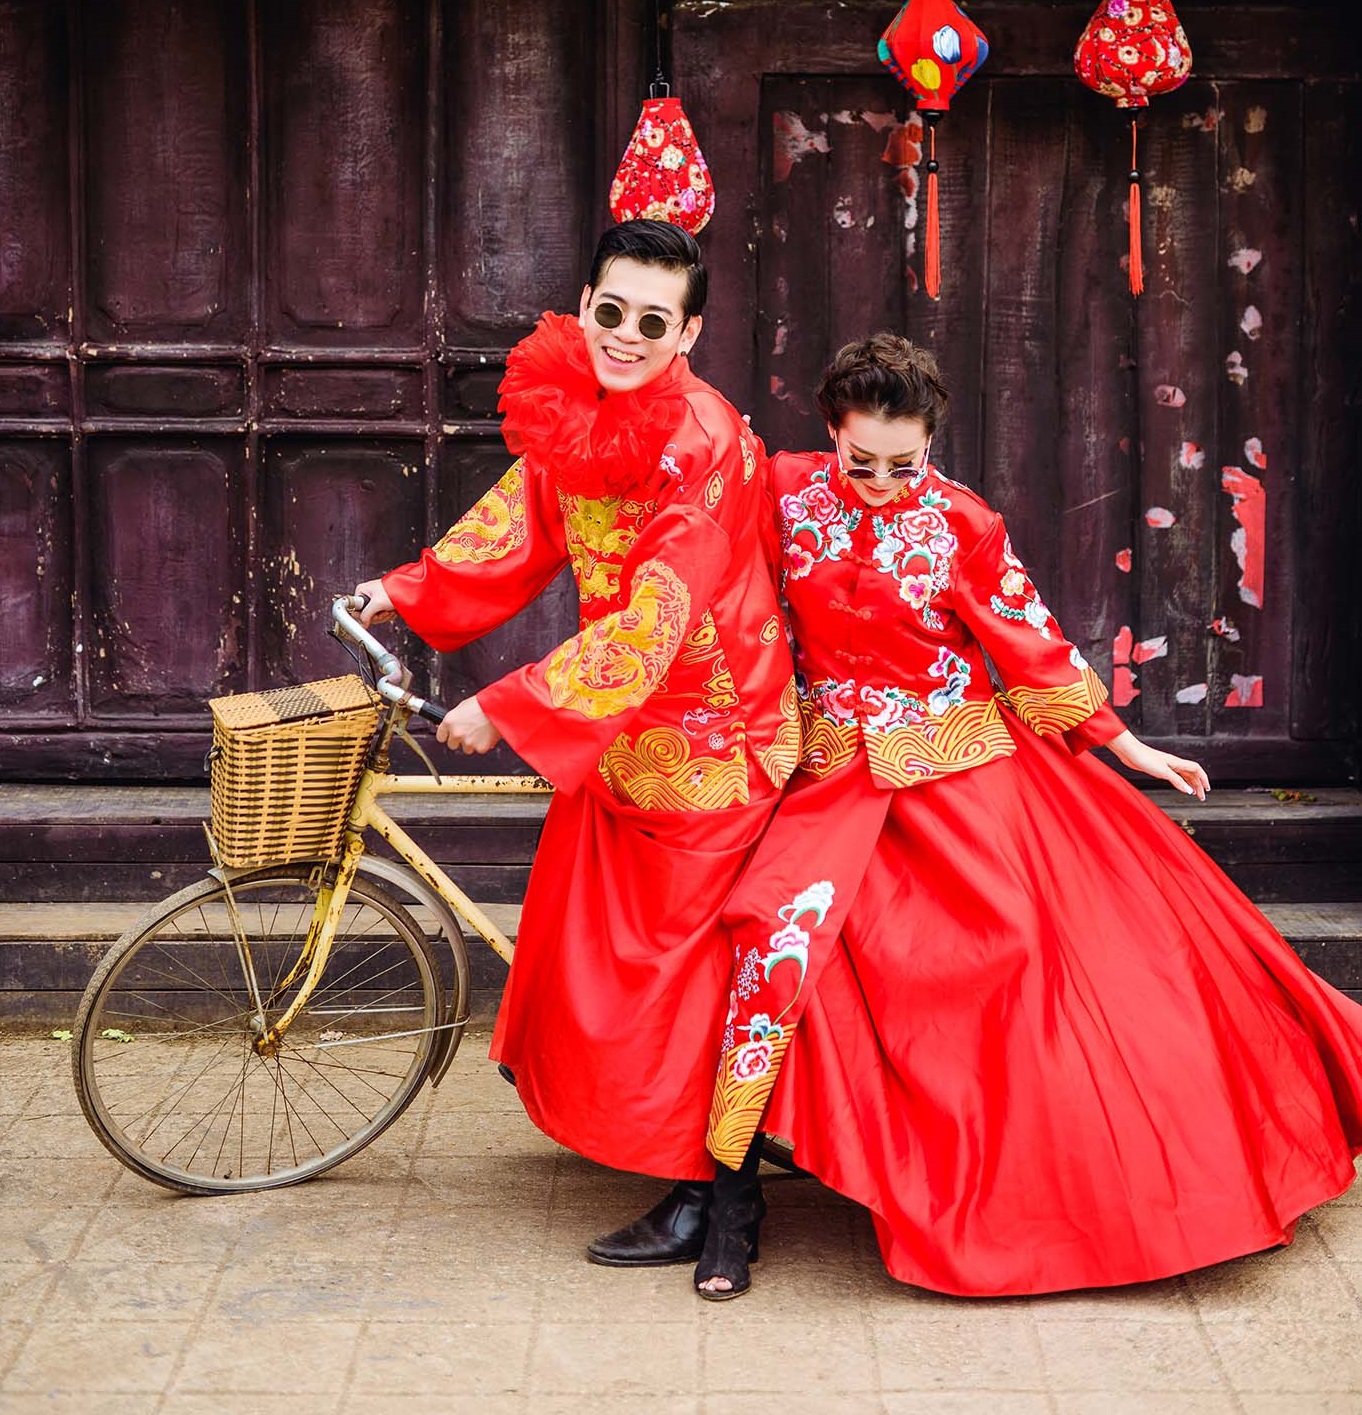 Chụp ảnh cưới theo kiểu Trung Quốc: Từ những bộ áo cưới trang trọng đến những trang trí lộng lẫy, chụp ảnh cưới theo kiểu Trung Quốc mang đến cho bạn những kỷ niệm tuyệt vời và khó quên. Hãy xem hình ảnh để lấy ý tưởng cho bộ ảnh cưới riêng của bạn.